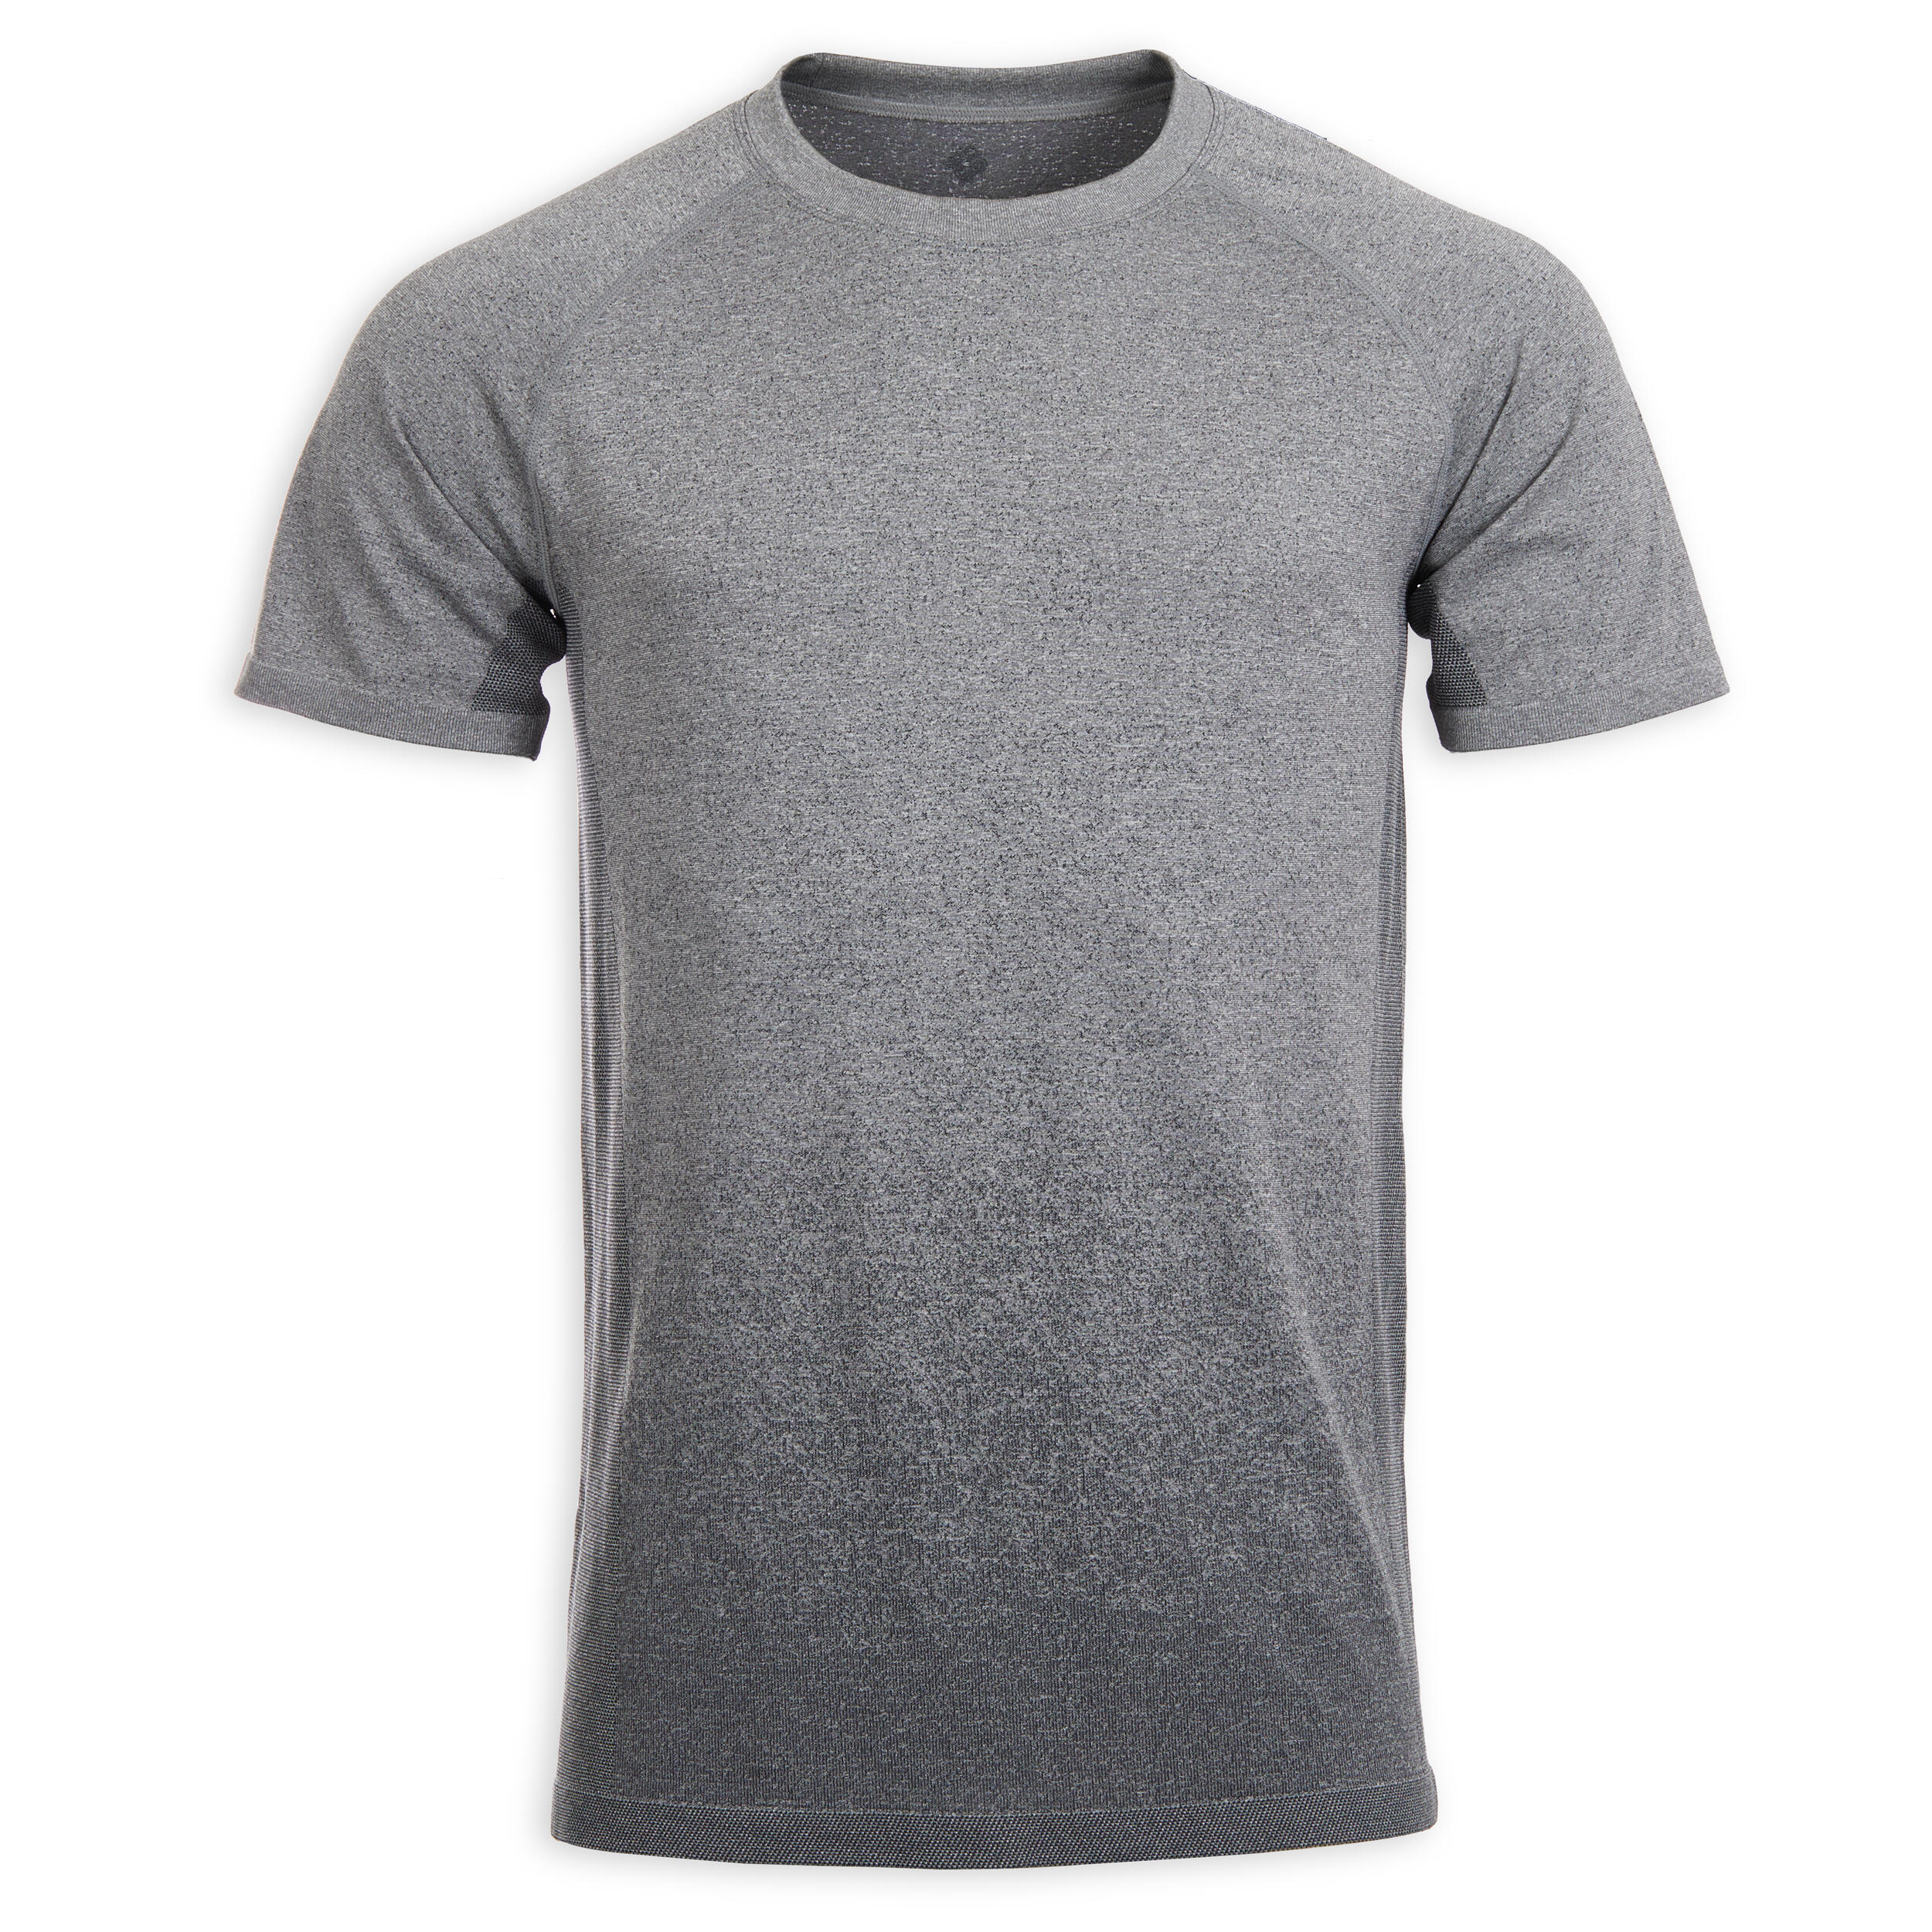 Men's Seamless Short-Sleeved Dynamic Yoga T-Shirt - Light Grey 5/5